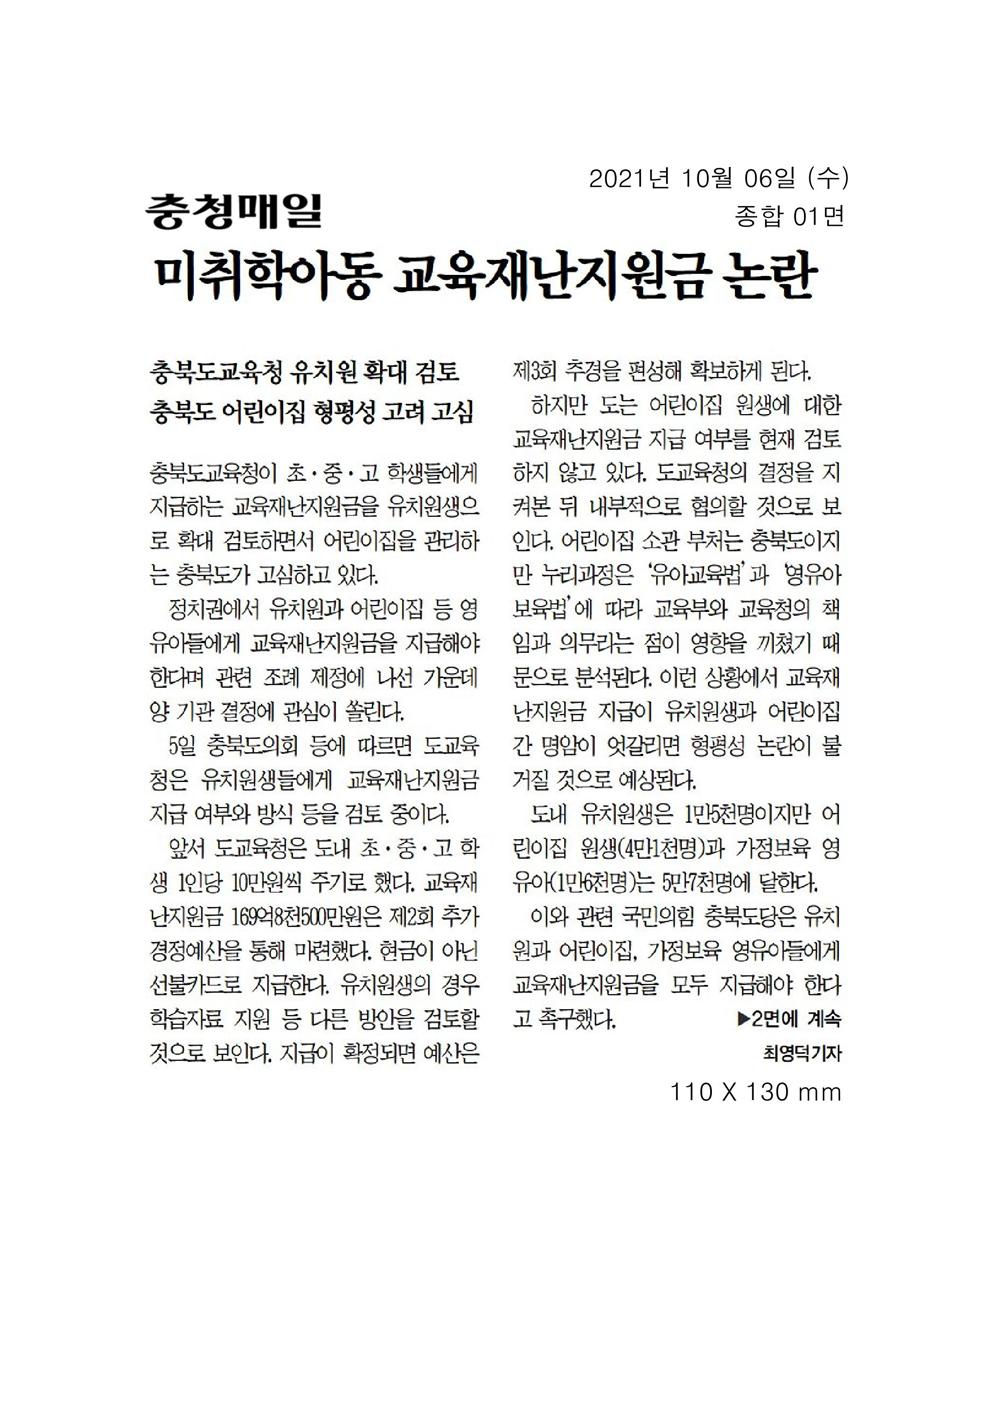 이옥규의원 교육재난지원금 조례발의 신문보도 - 3